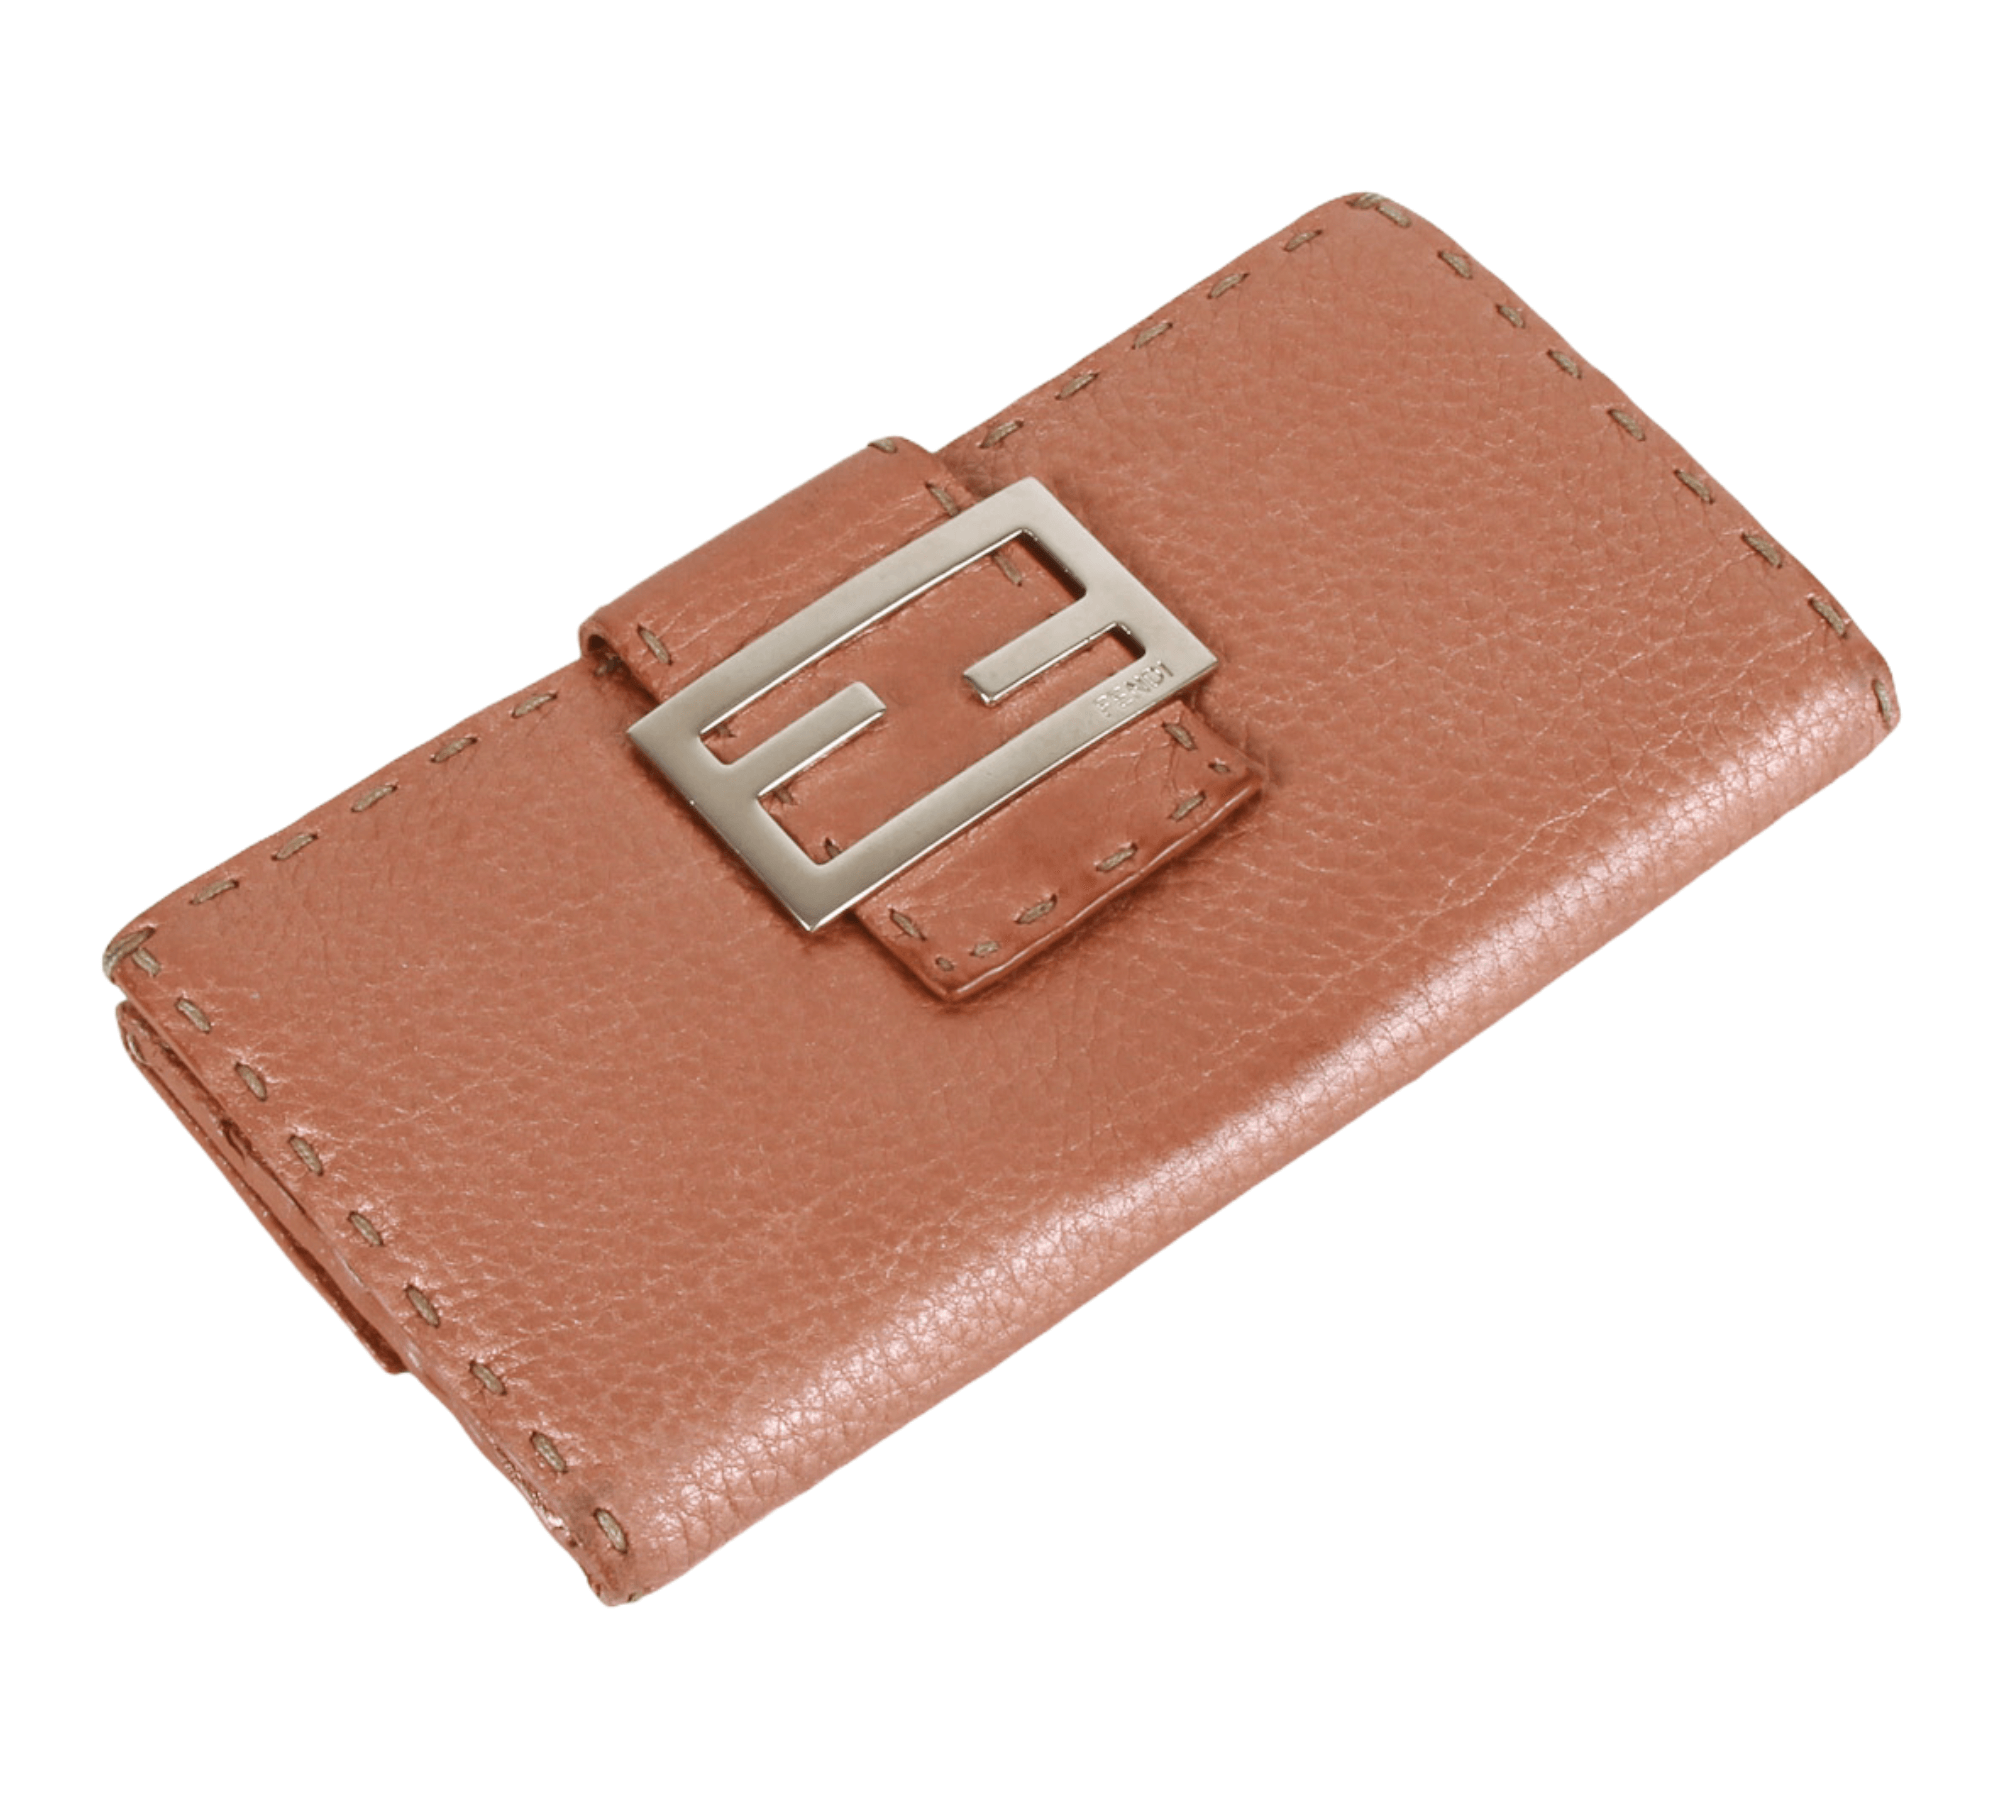 Authentic Luxury Monogram Fendi Wallet One Size 